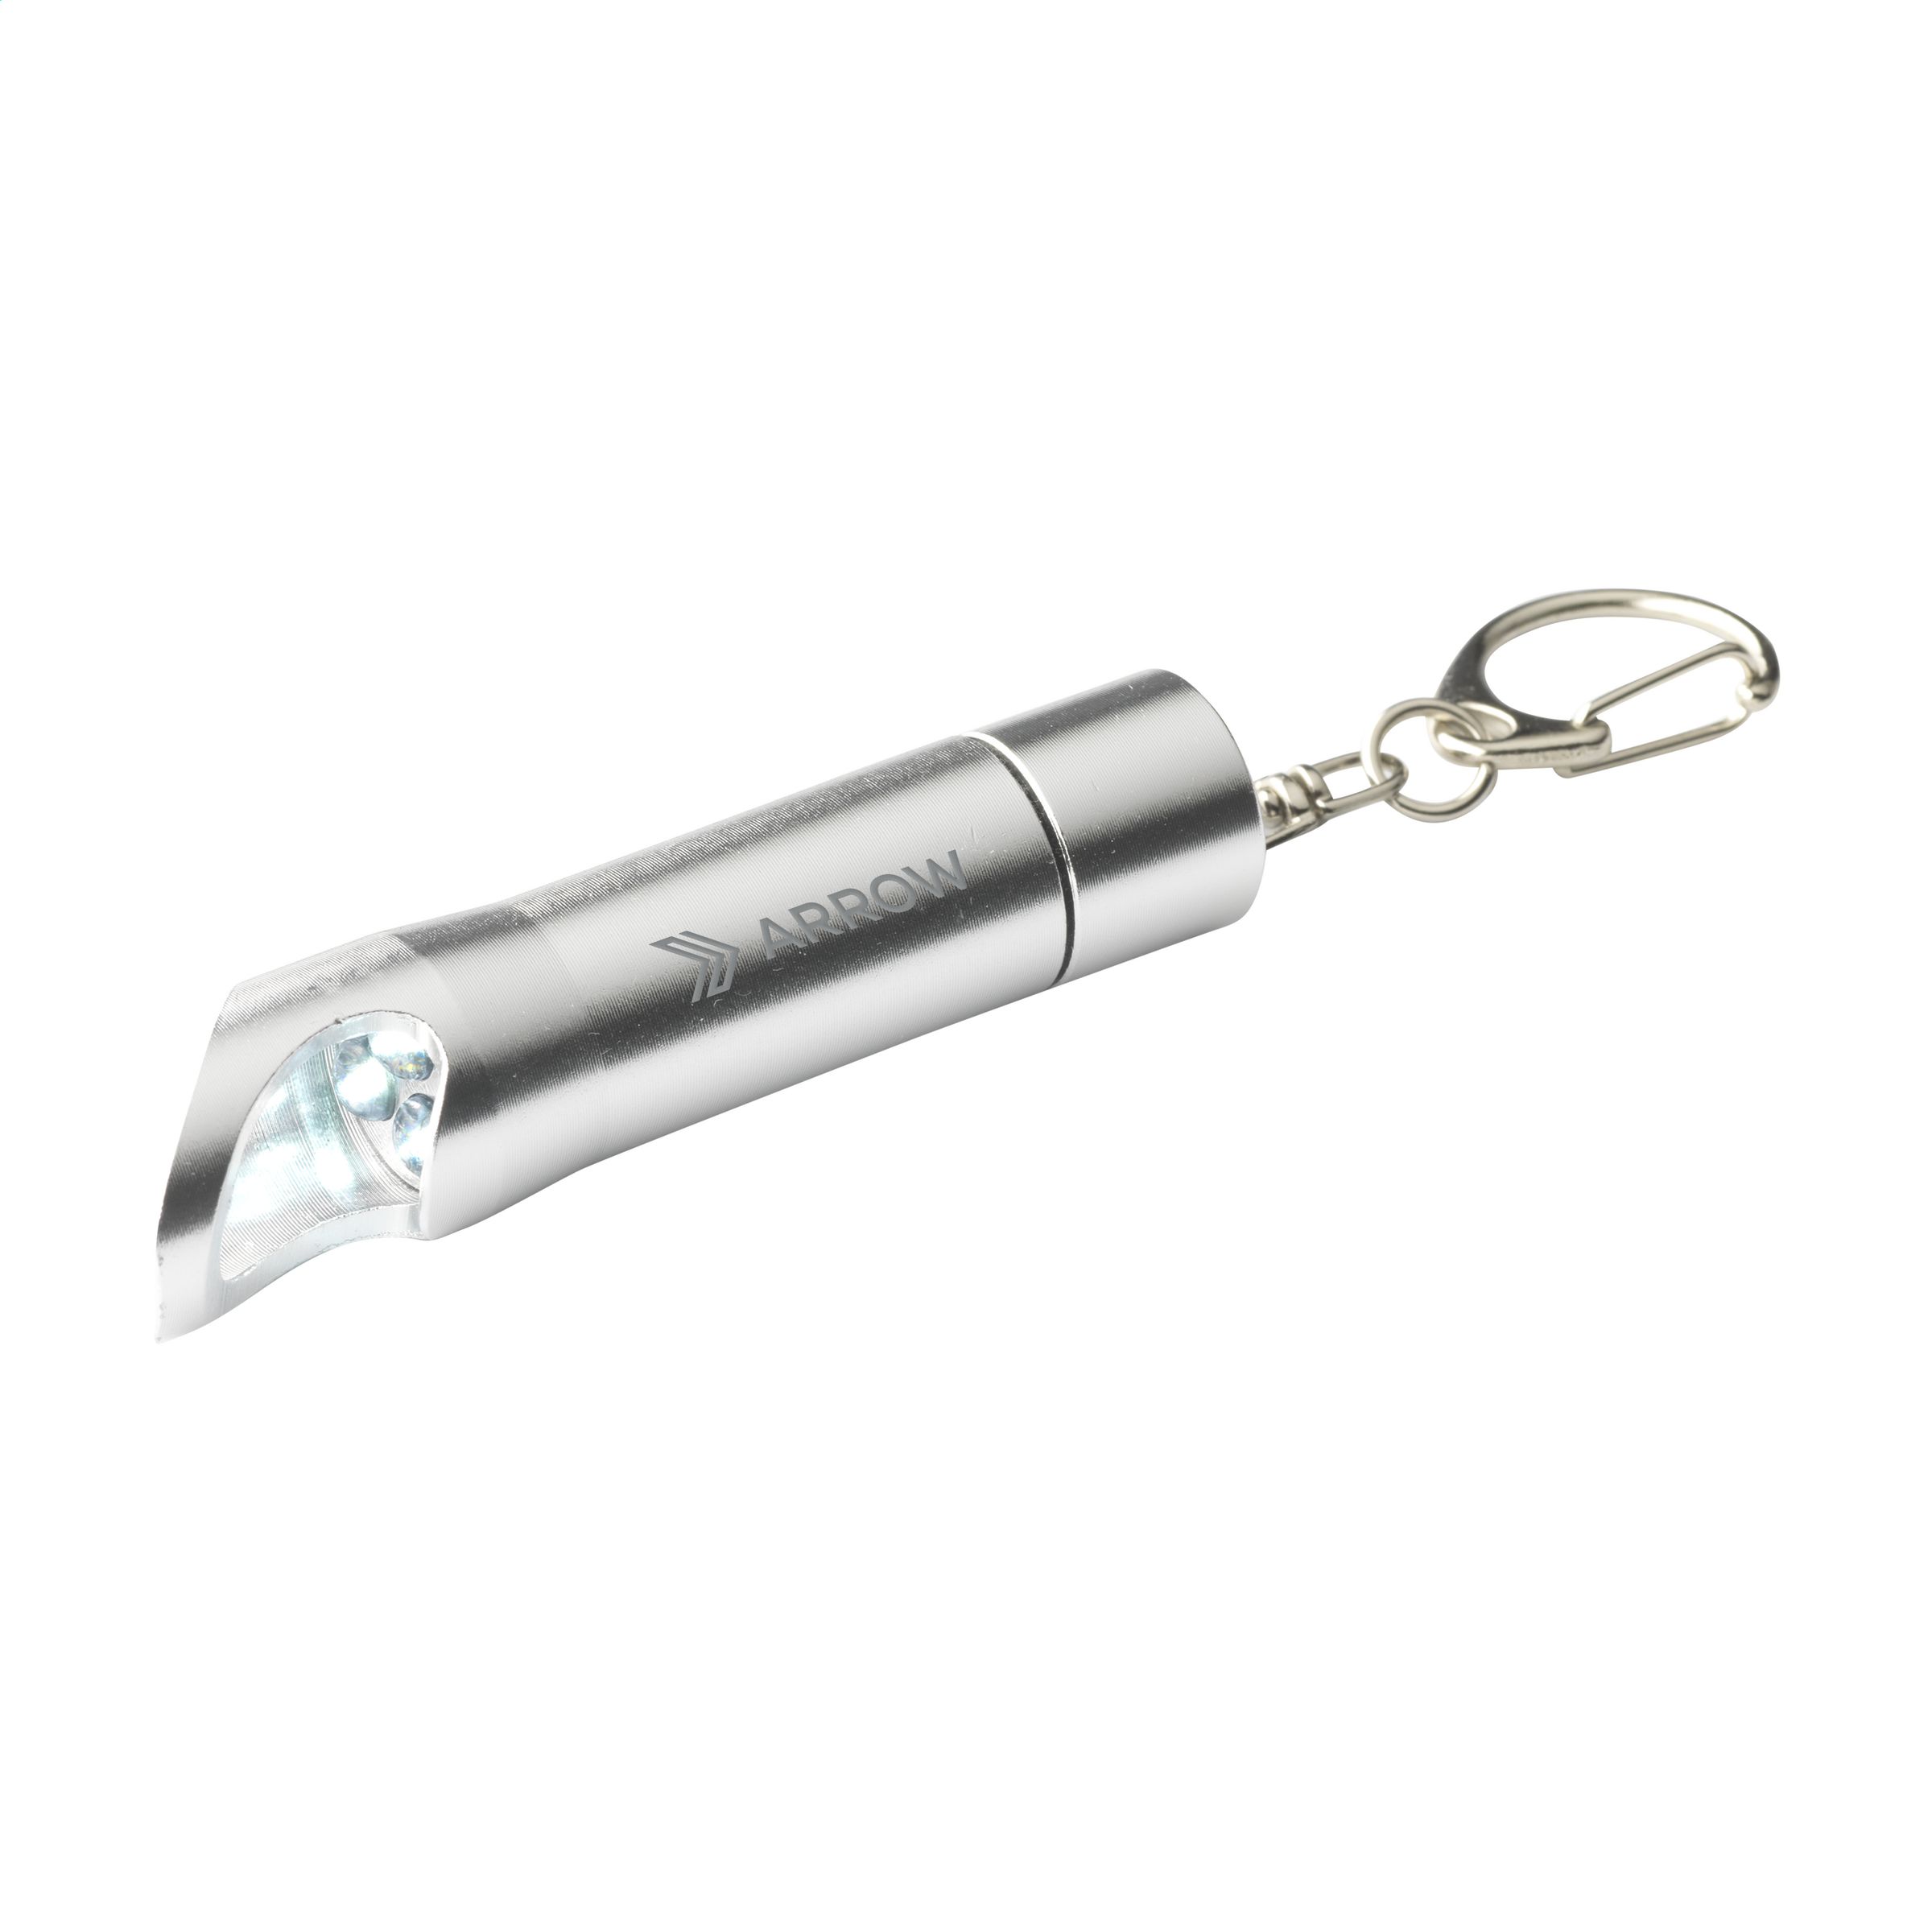 Aluminum flashlight with carabiner clip and bottle opener - Ashendon - Osgathorpe